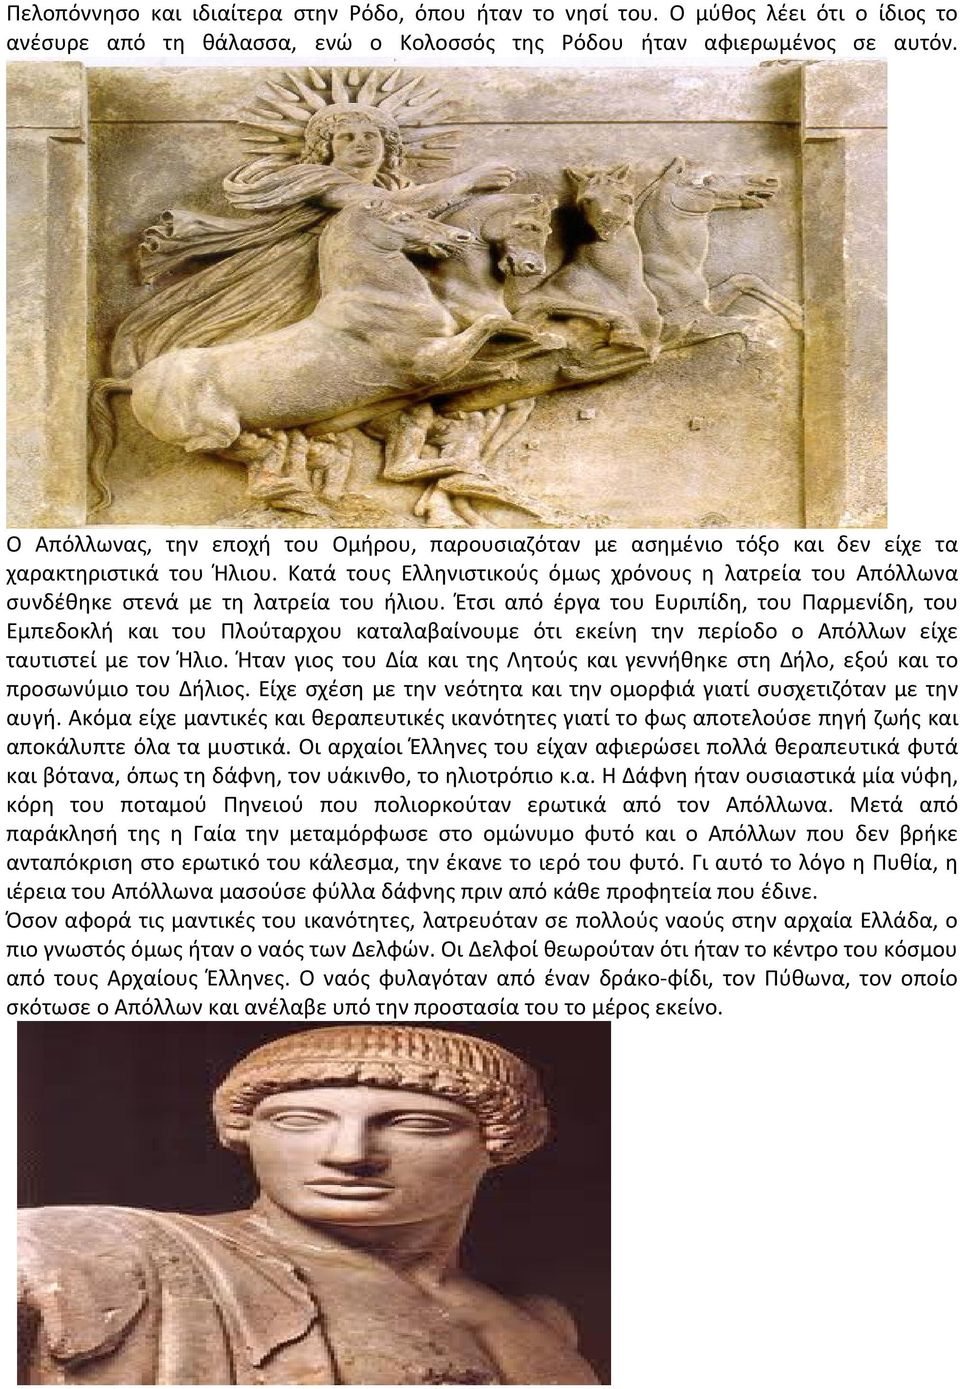 Κατά τους Ελληνιστικούς όμως χρόνους η λατρεία του Απόλλωνα συνδέθηκε στενά με τη λατρεία του ήλιου.